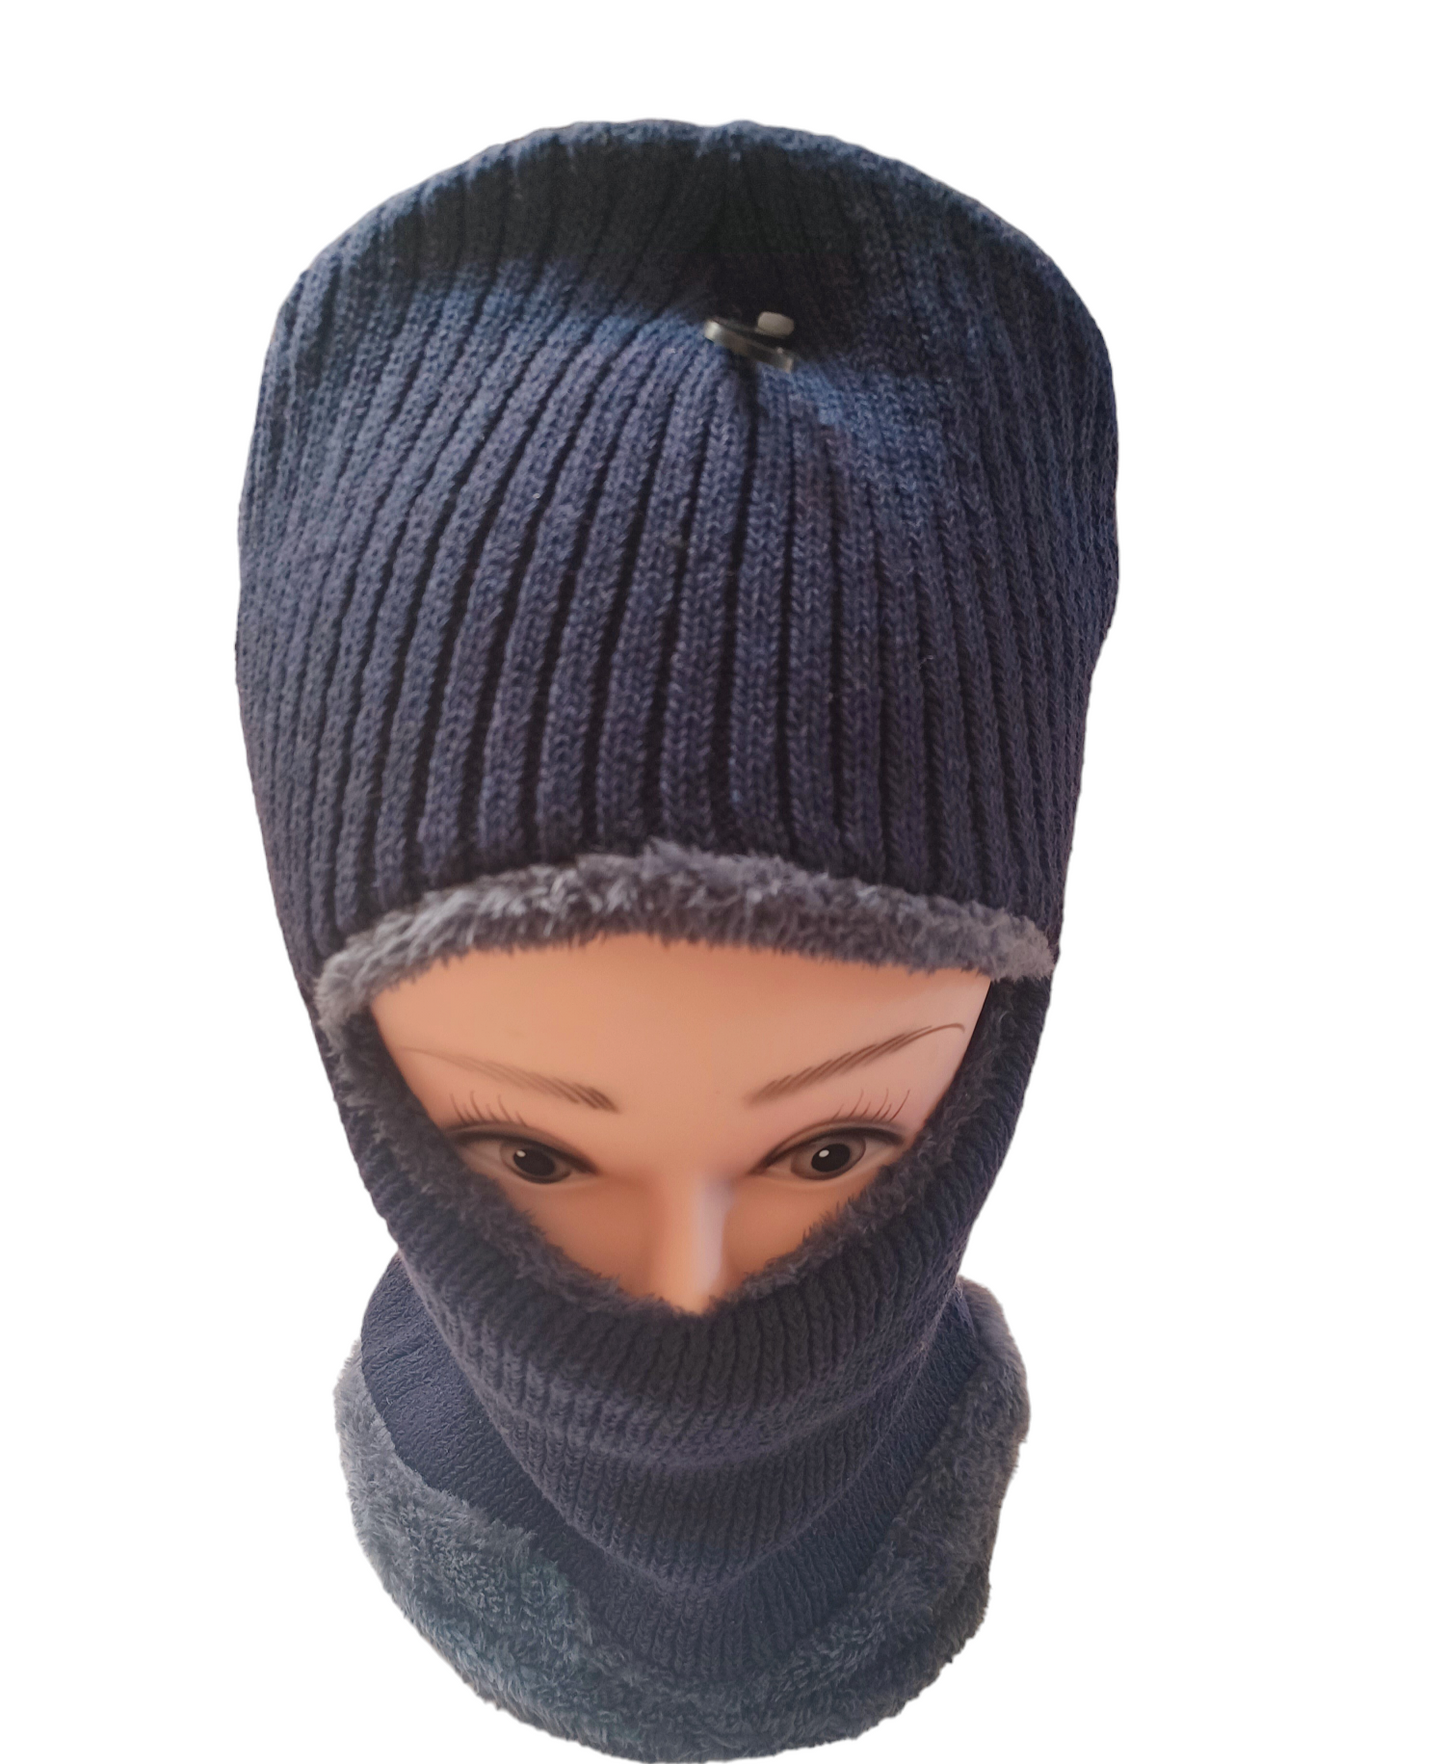 Warm Balaclava Fleece Ski Mask